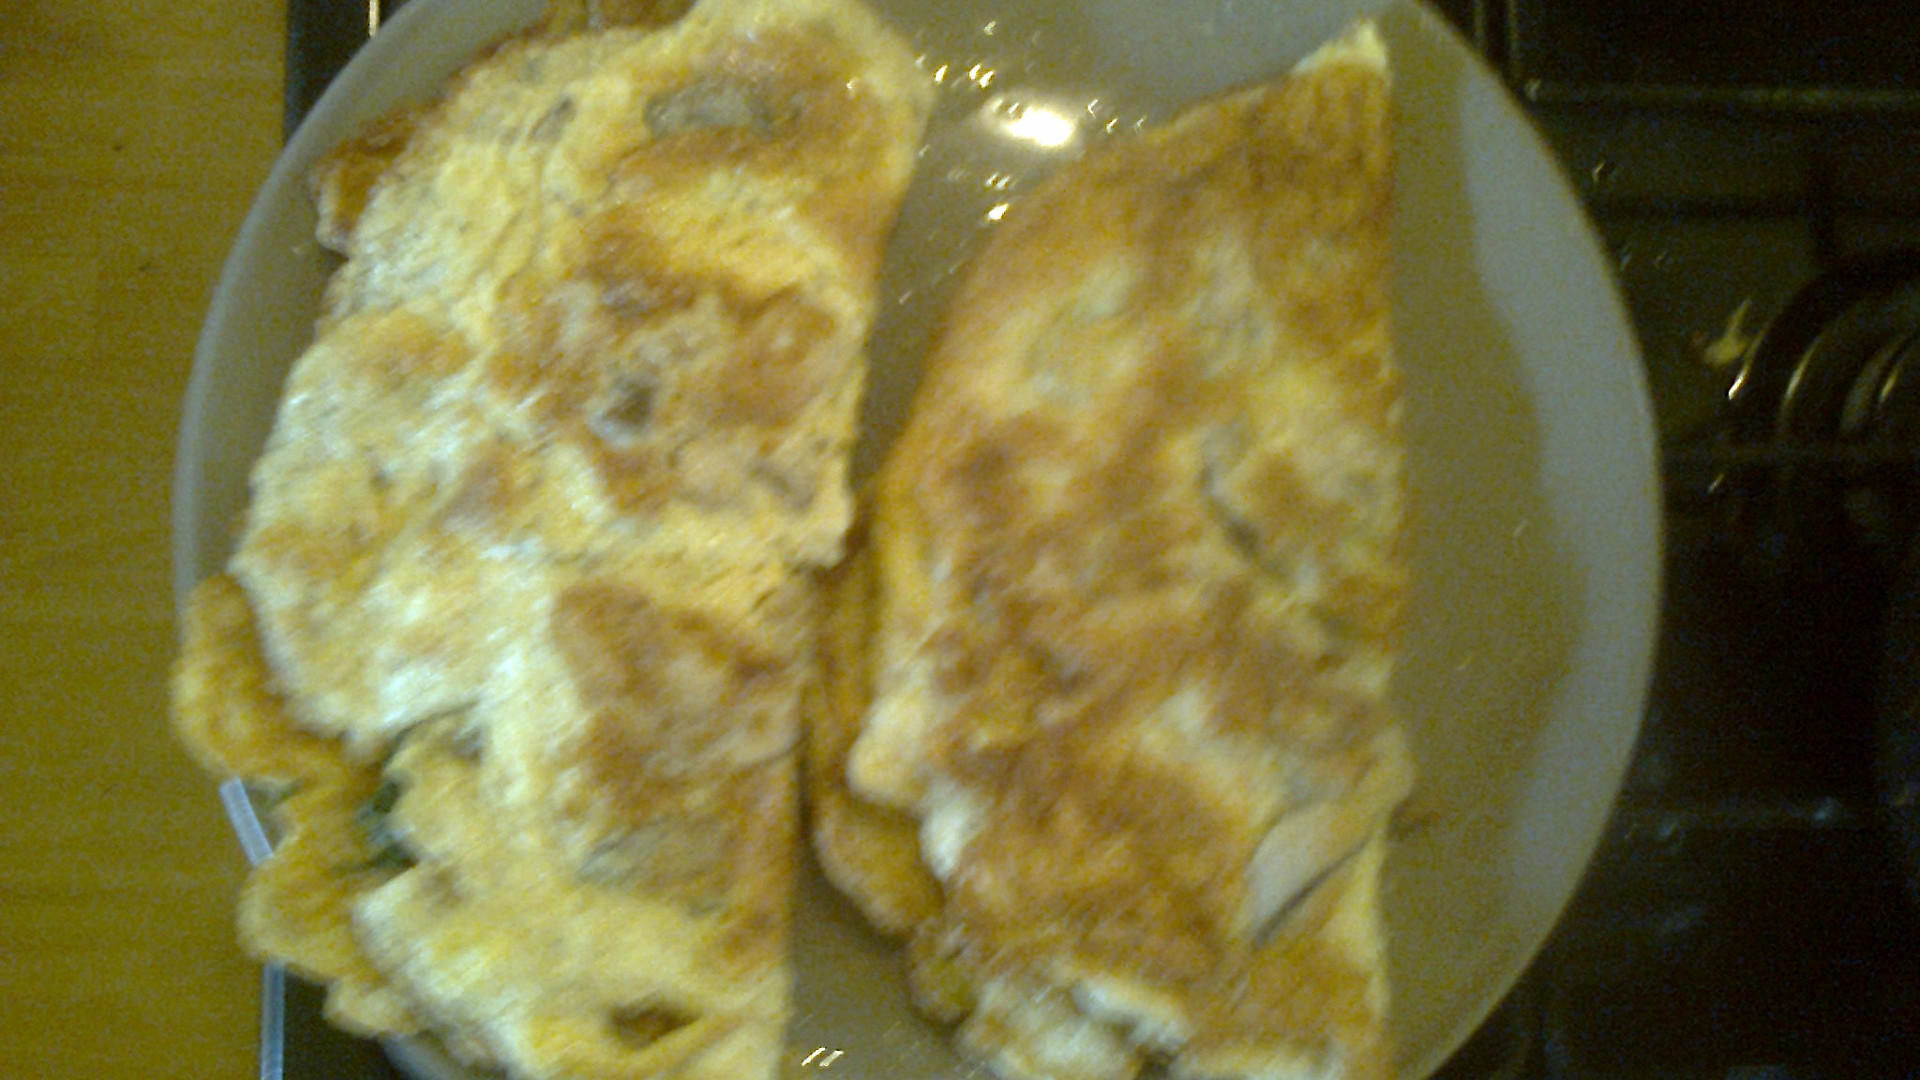 Žampionová omeleta se špenátem (i bezlepková)